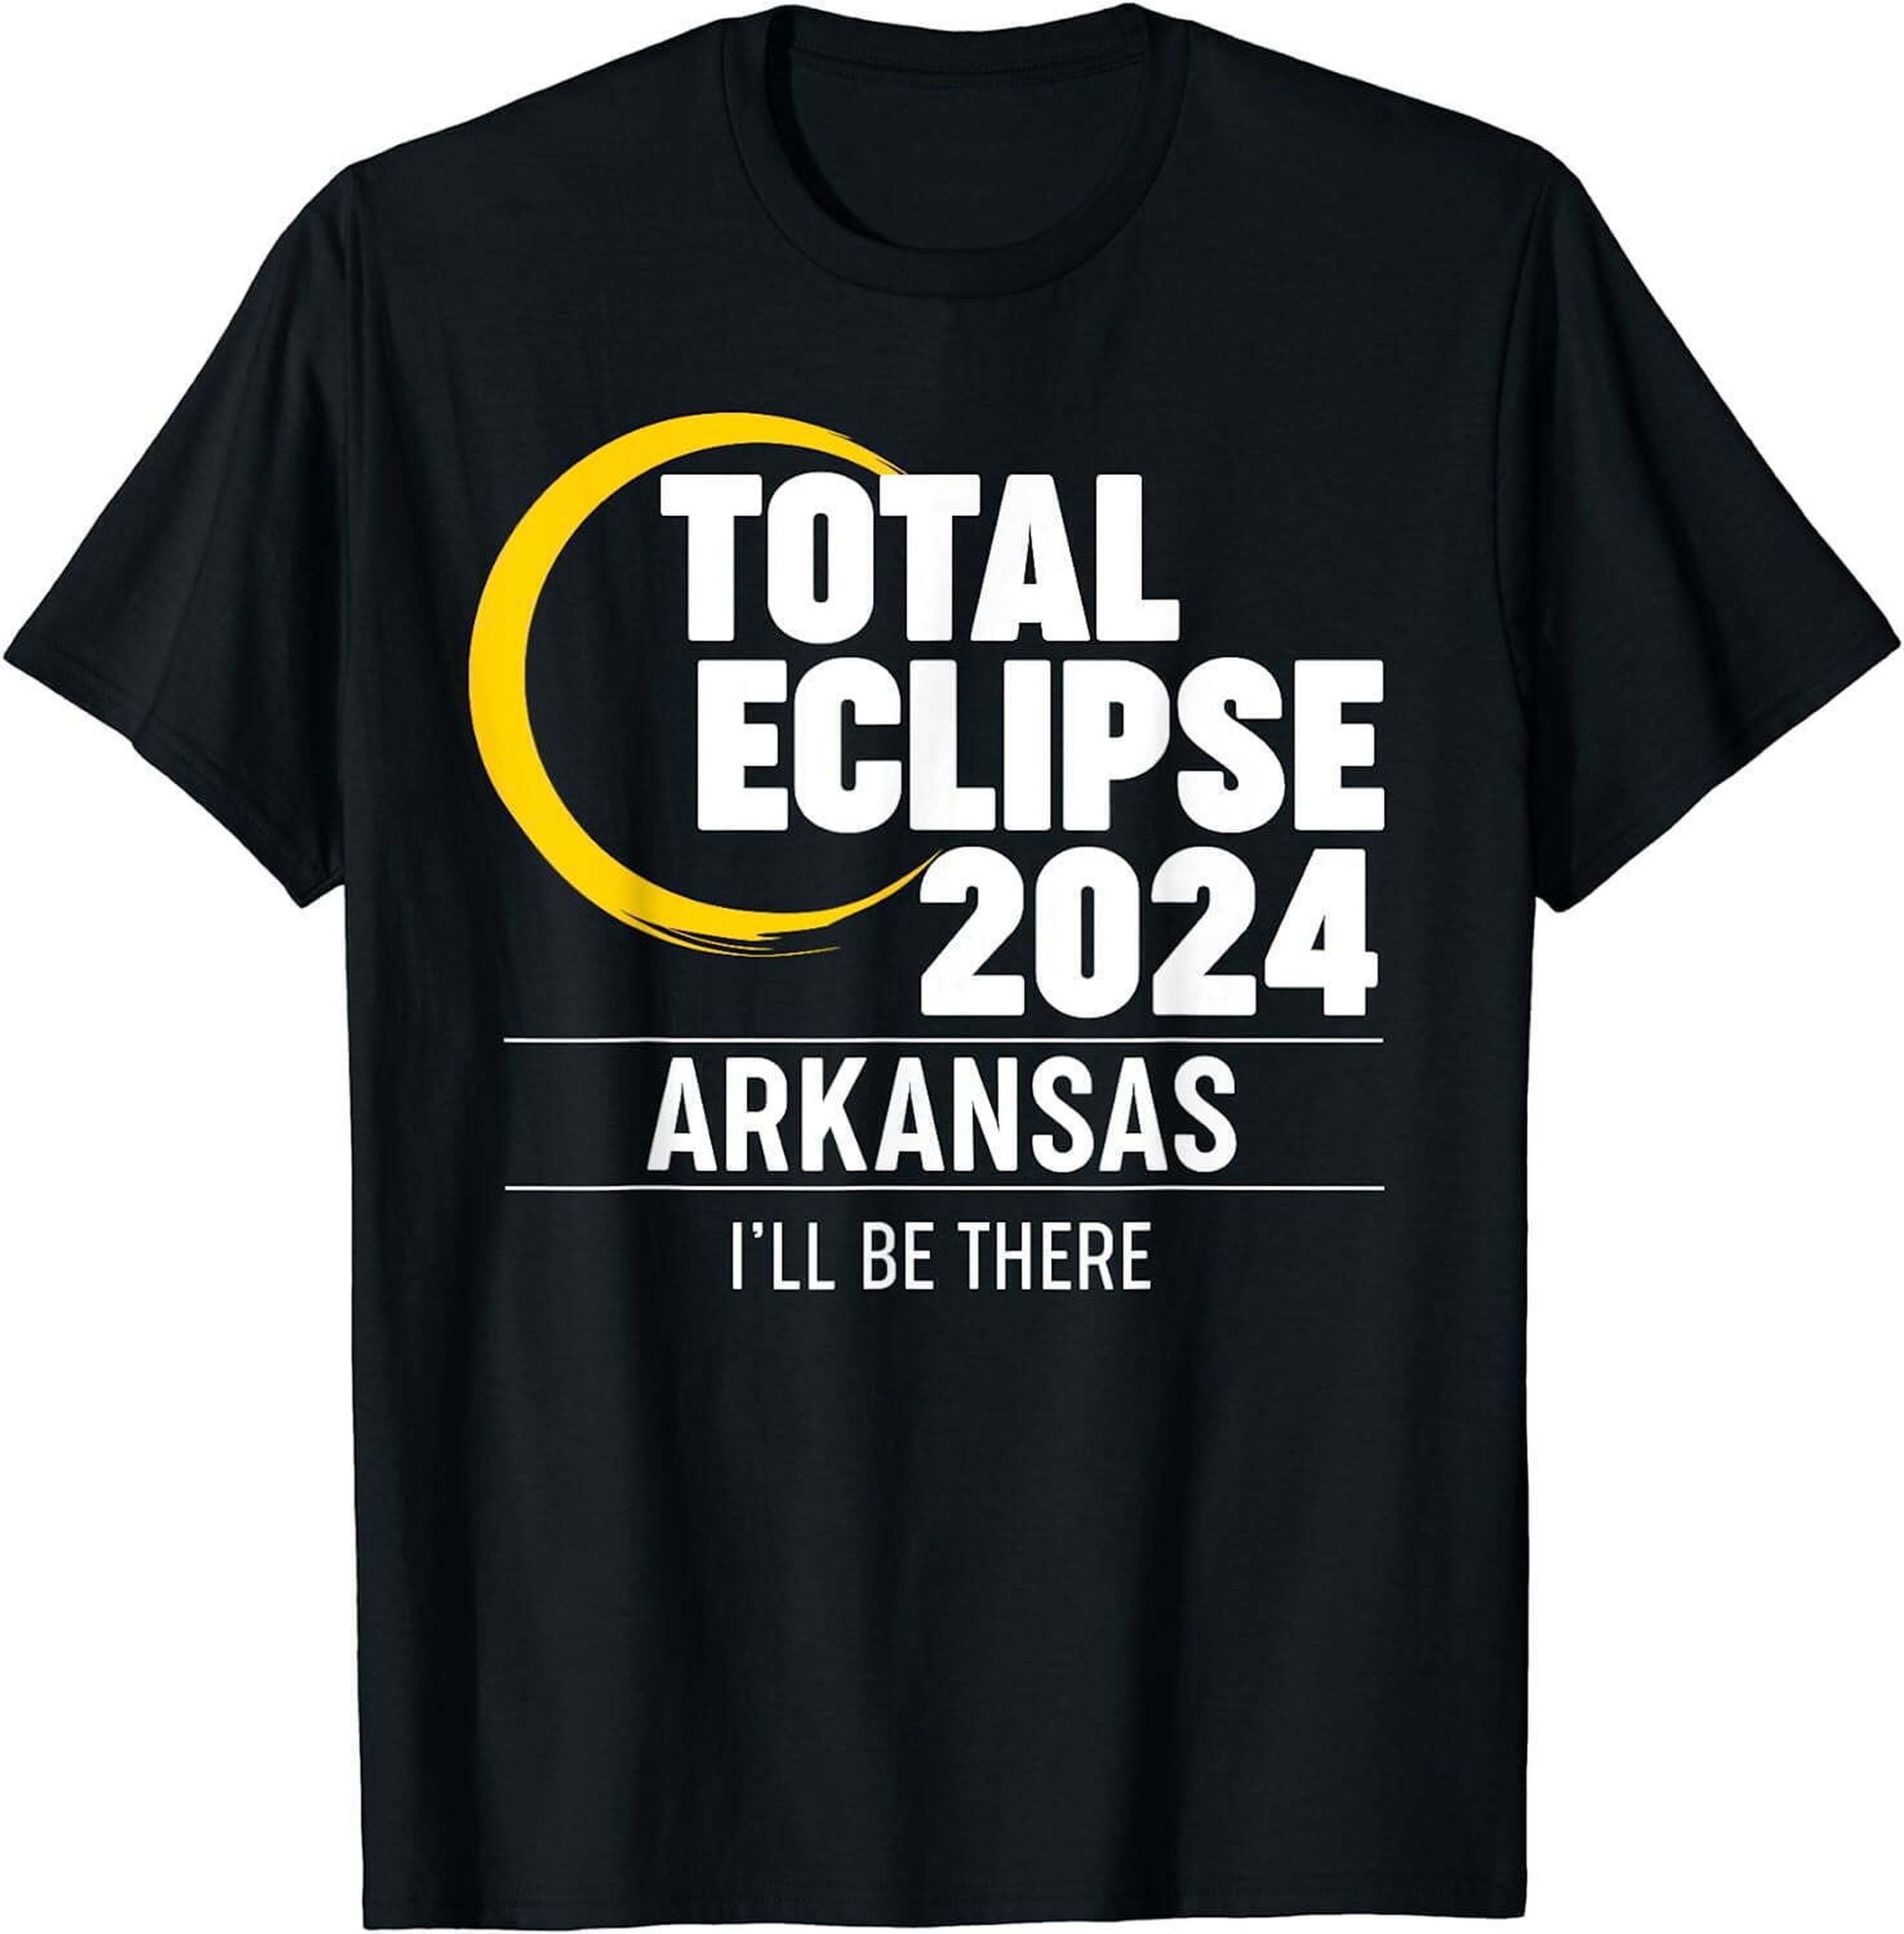 Arkansas Eclipse 2024 Souvenir TShirt Embrace the Enchantment of the